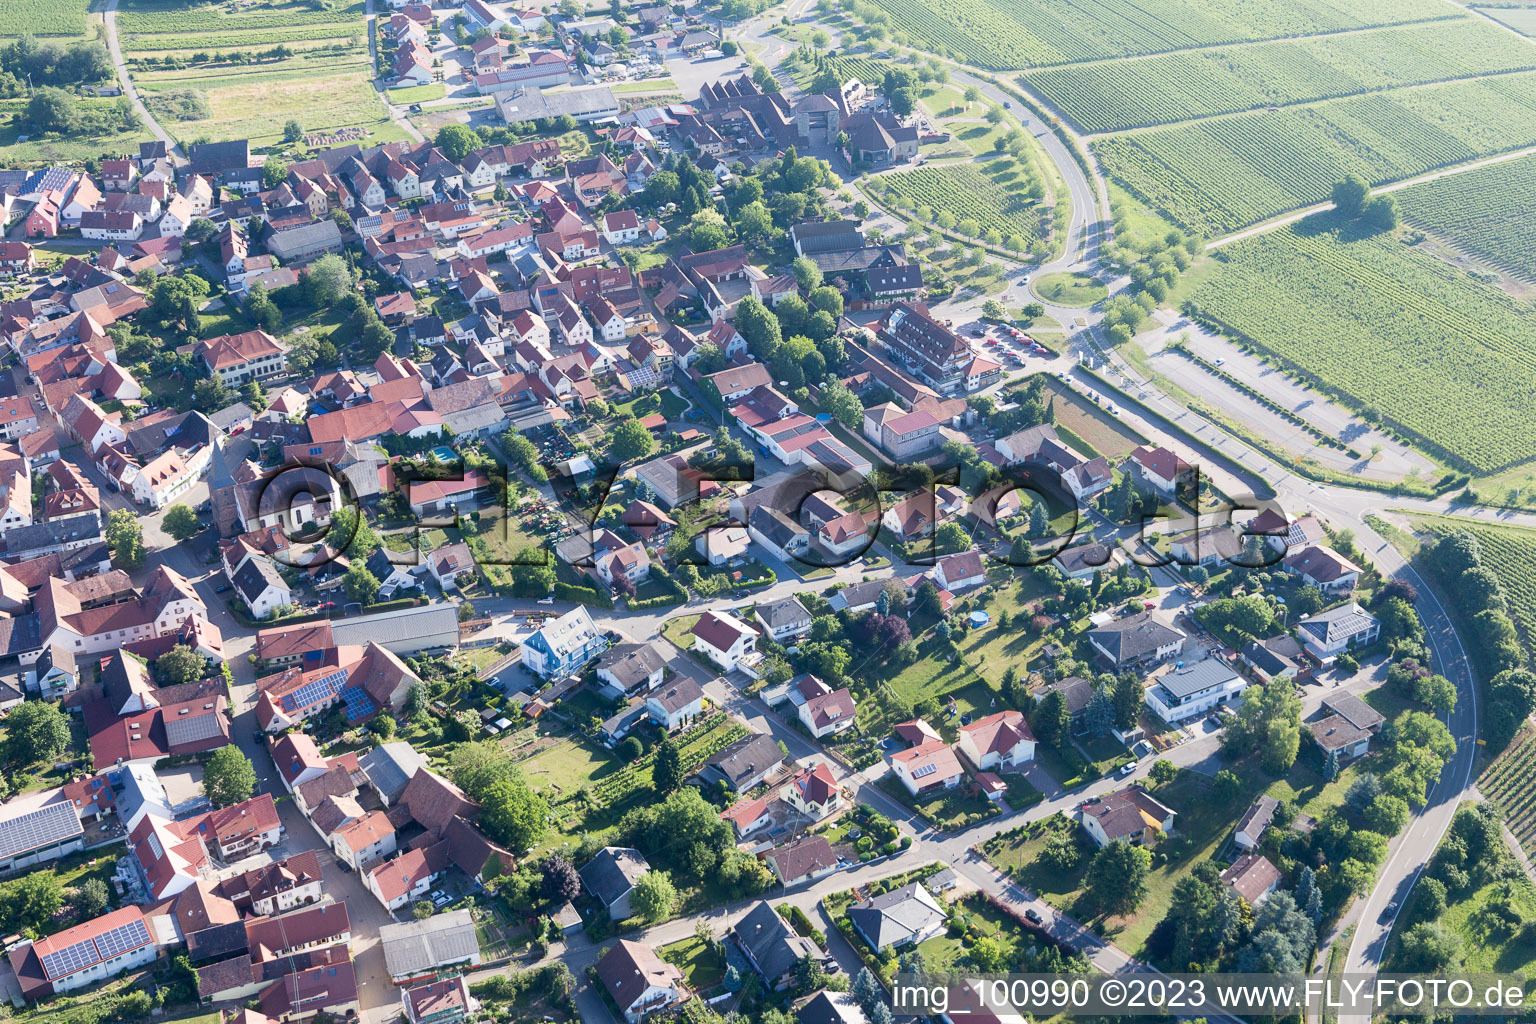 District Schweigen in Schweigen-Rechtenbach in the state Rhineland-Palatinate, Germany from the drone perspective